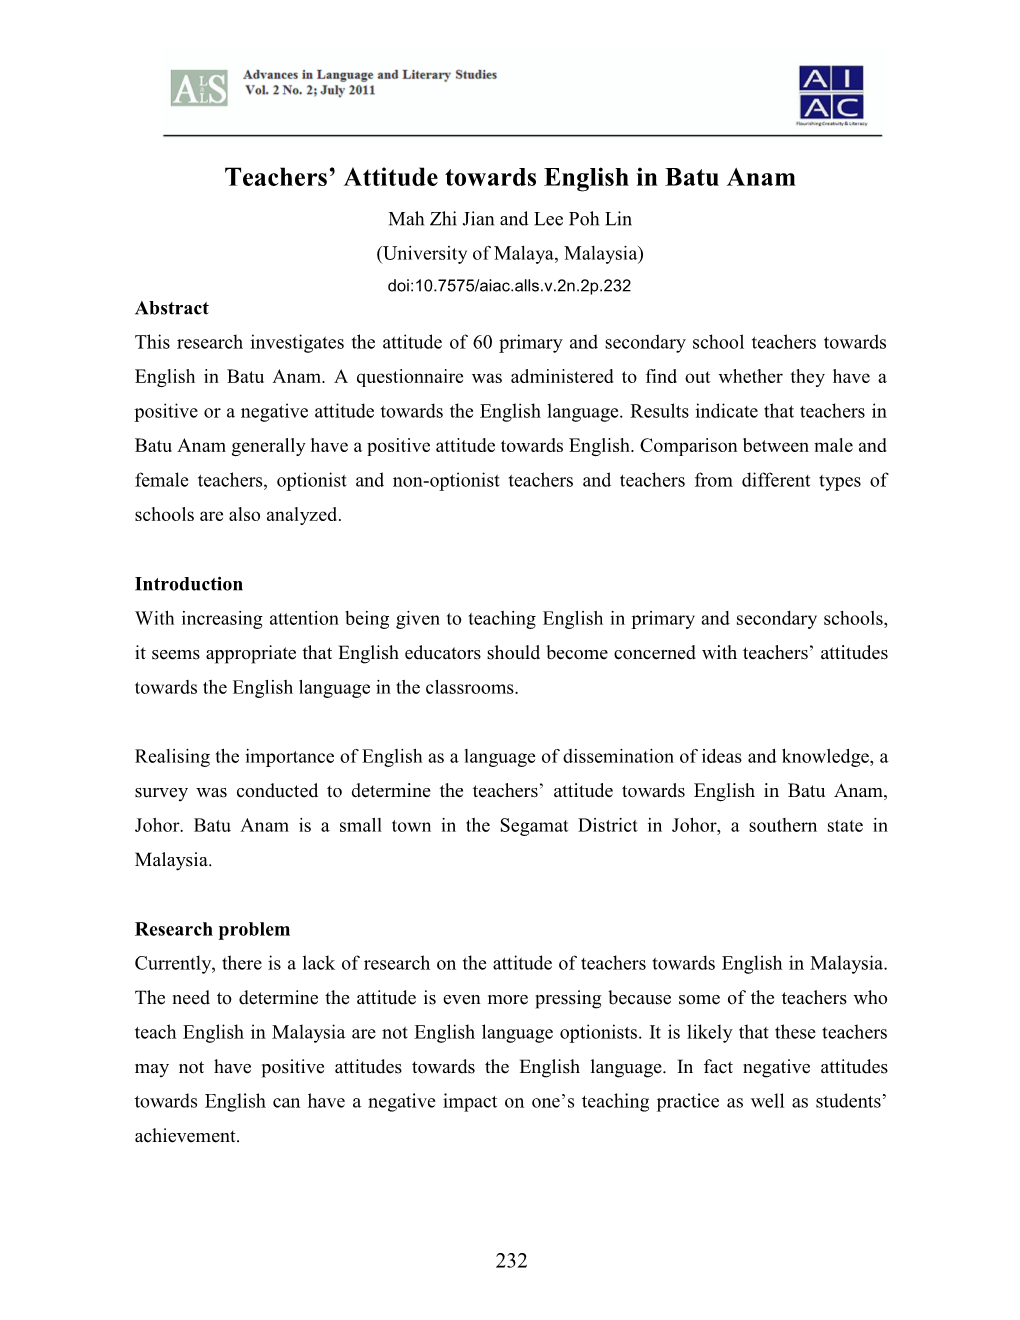 Teachers' Attitude Towards English in Batu Anam